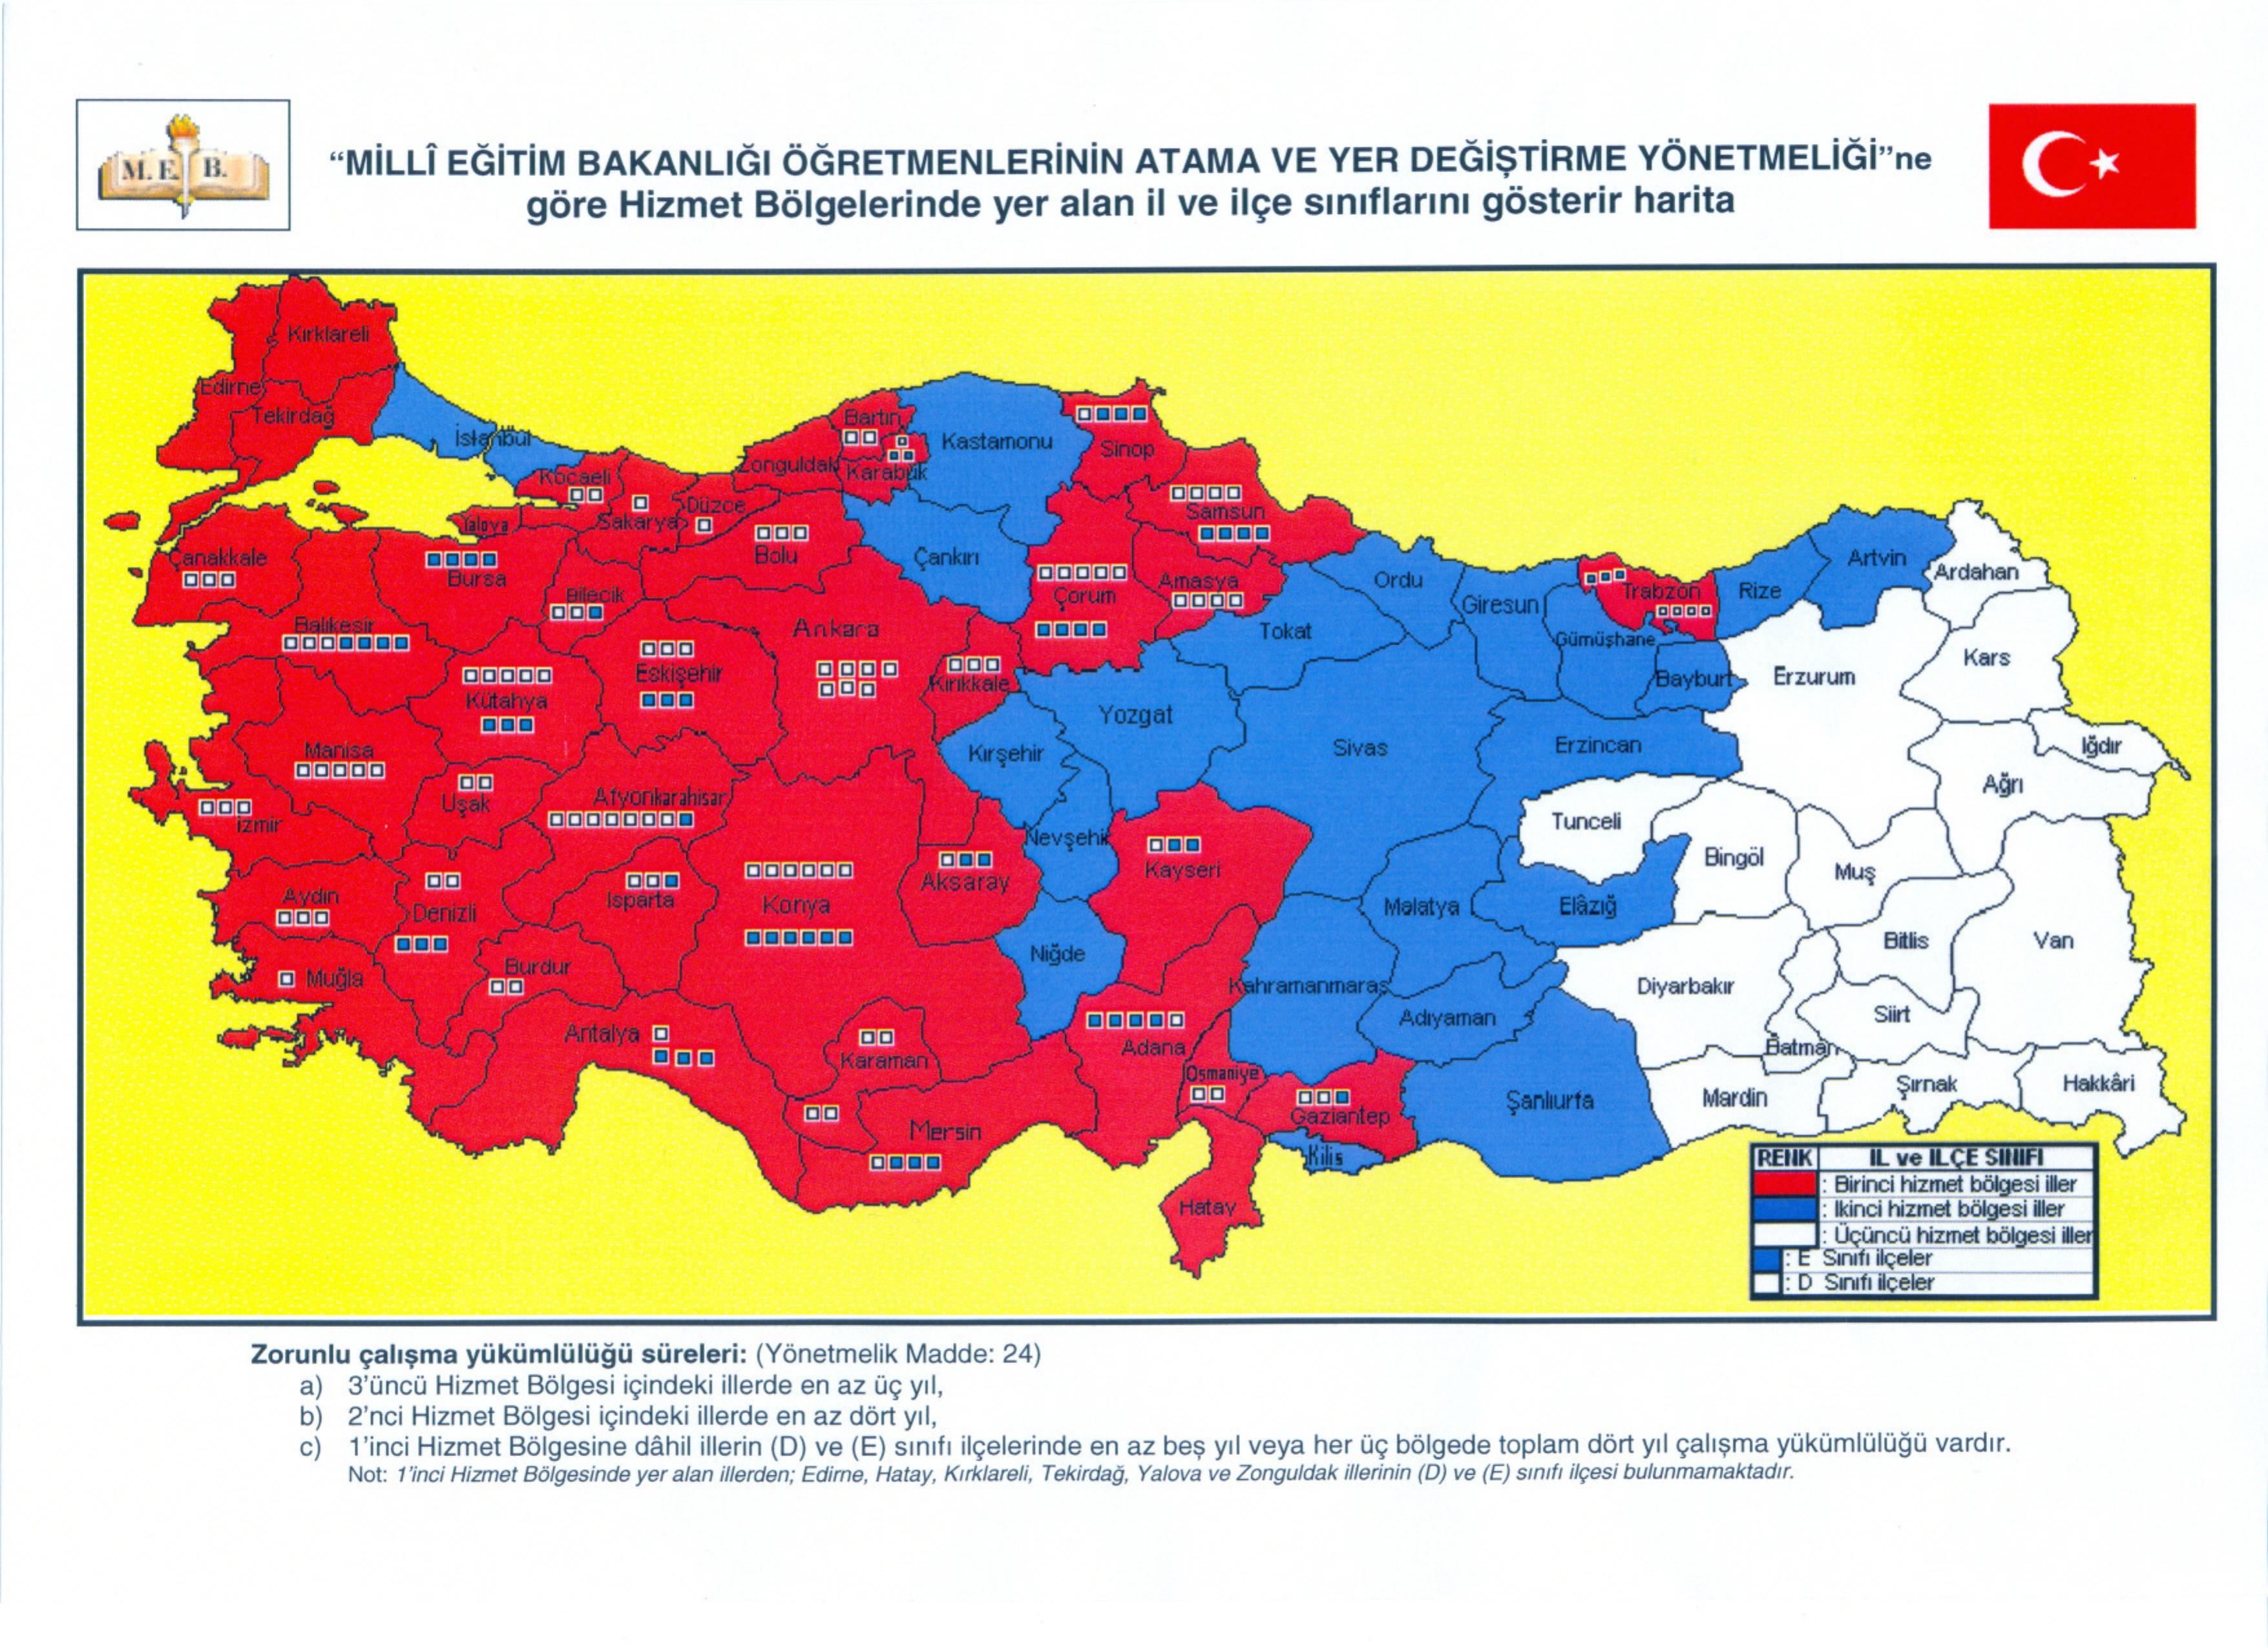 turkiye_haritasi_hizmet_bolgeleri_2-1